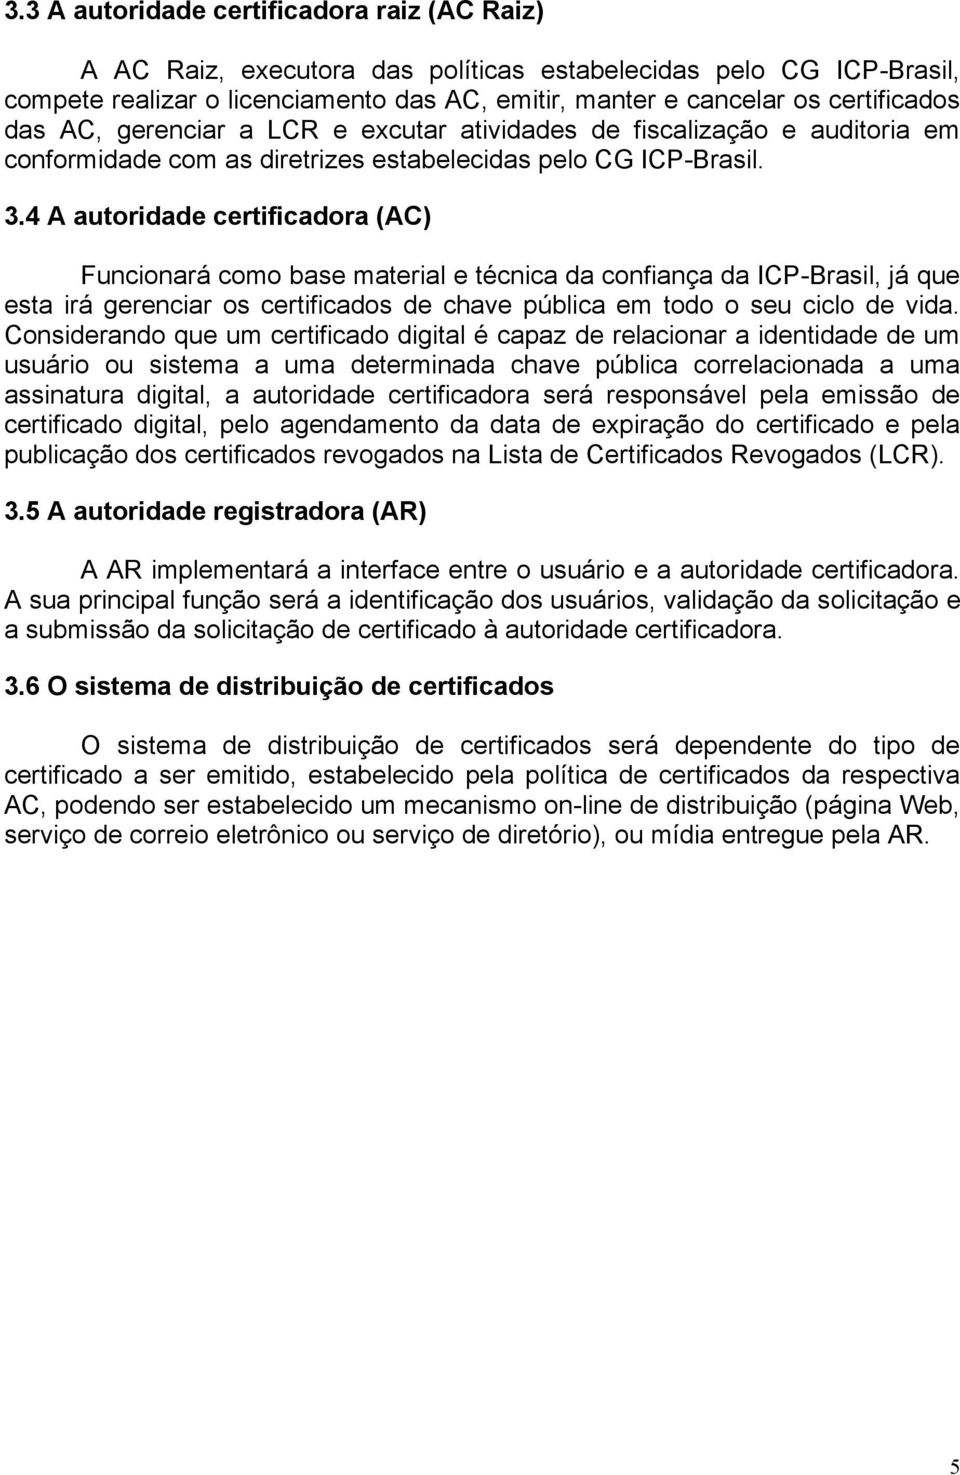 4 A autoridade certificadora (AC) Funcionará como base material e técnica da confiança da ICP-Brasil, já que esta irá gerenciar os certificados de chave pública em todo o seu ciclo de vida.